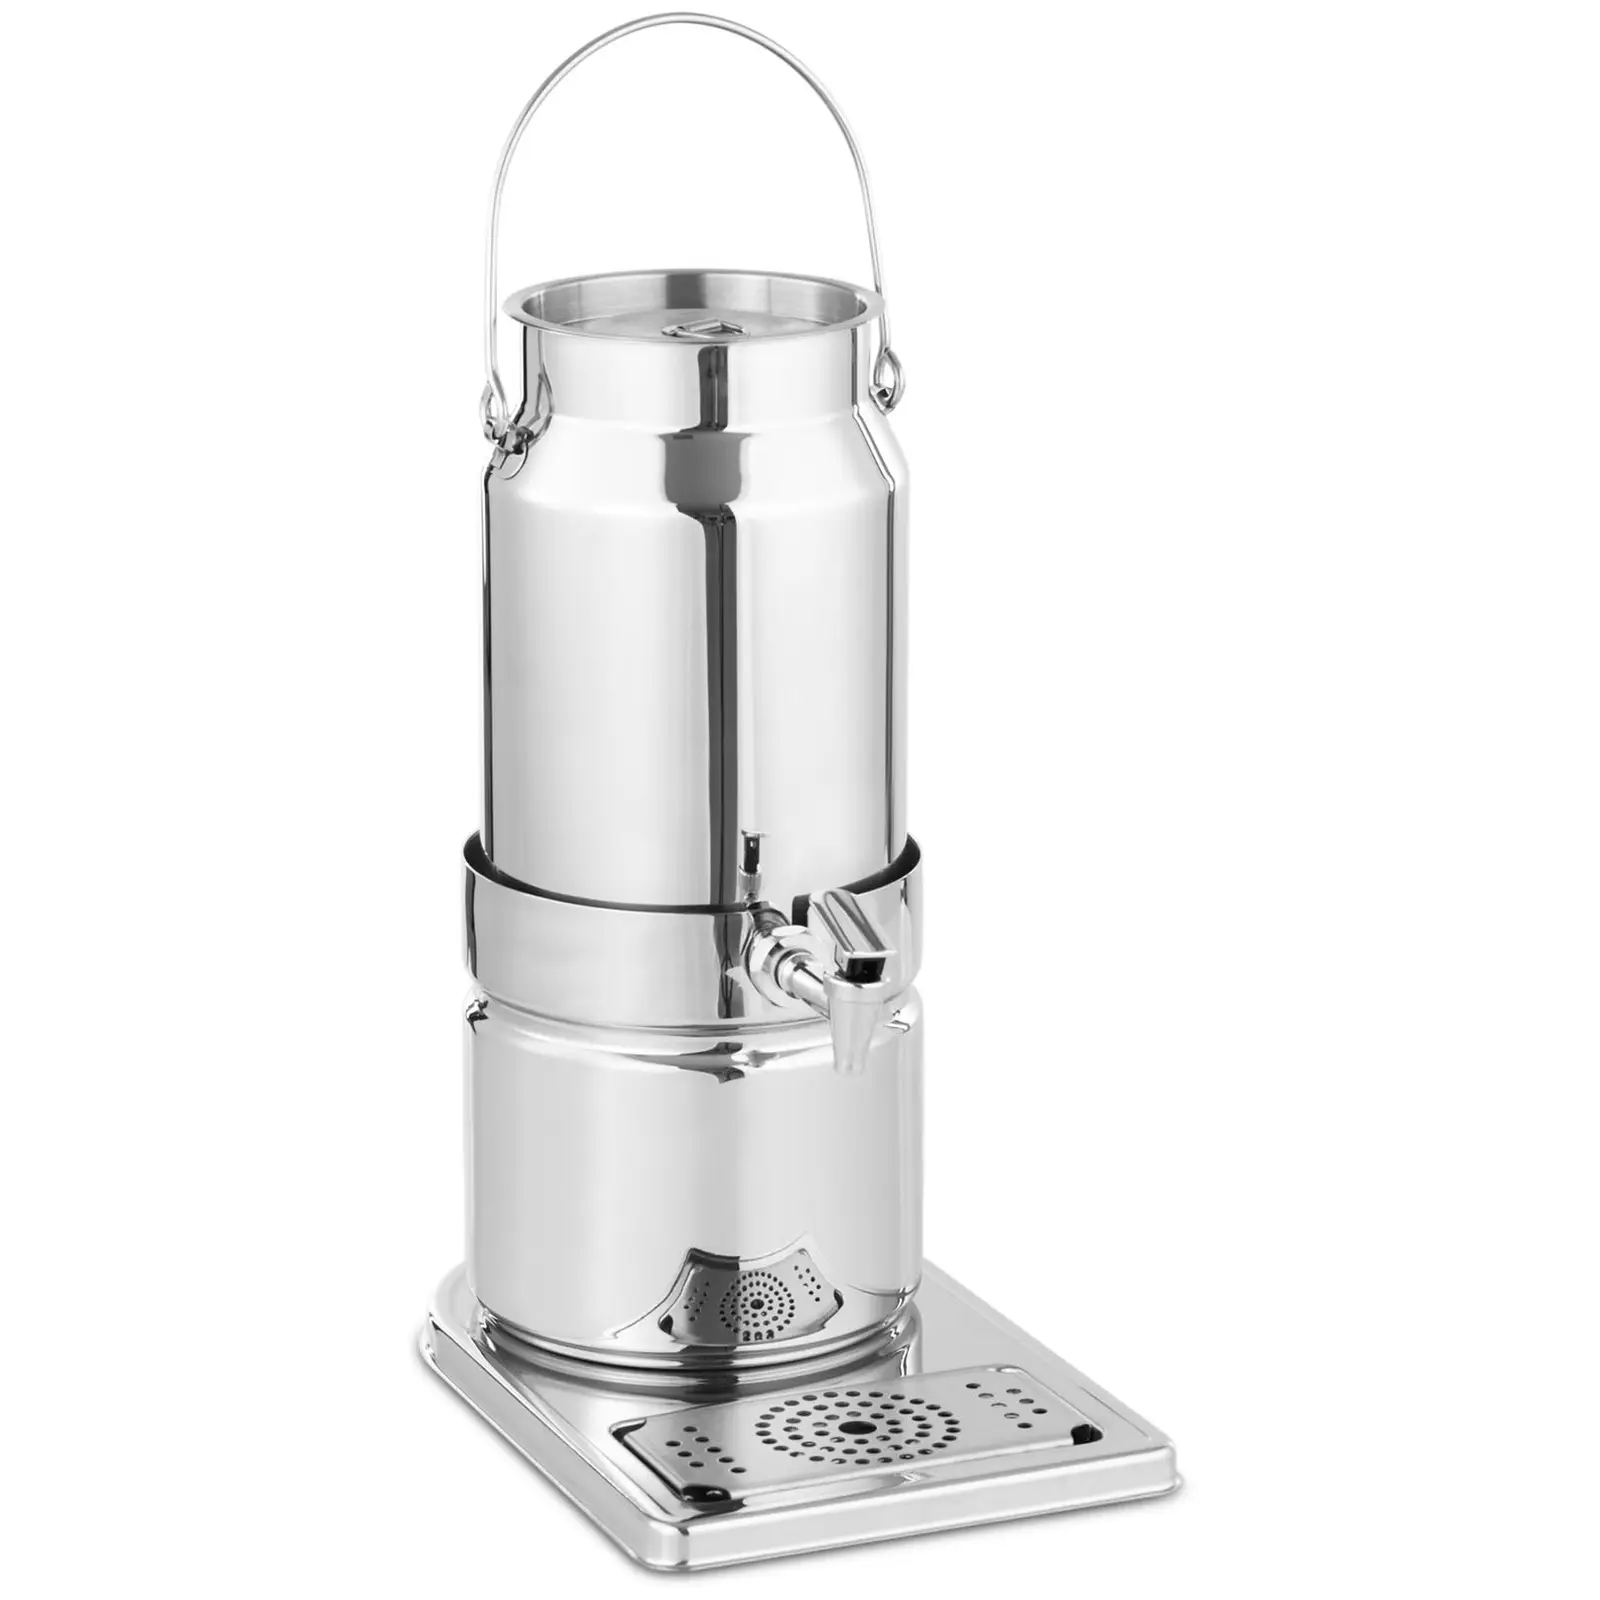 Milk Dispenser - Stainless steel - 5 L